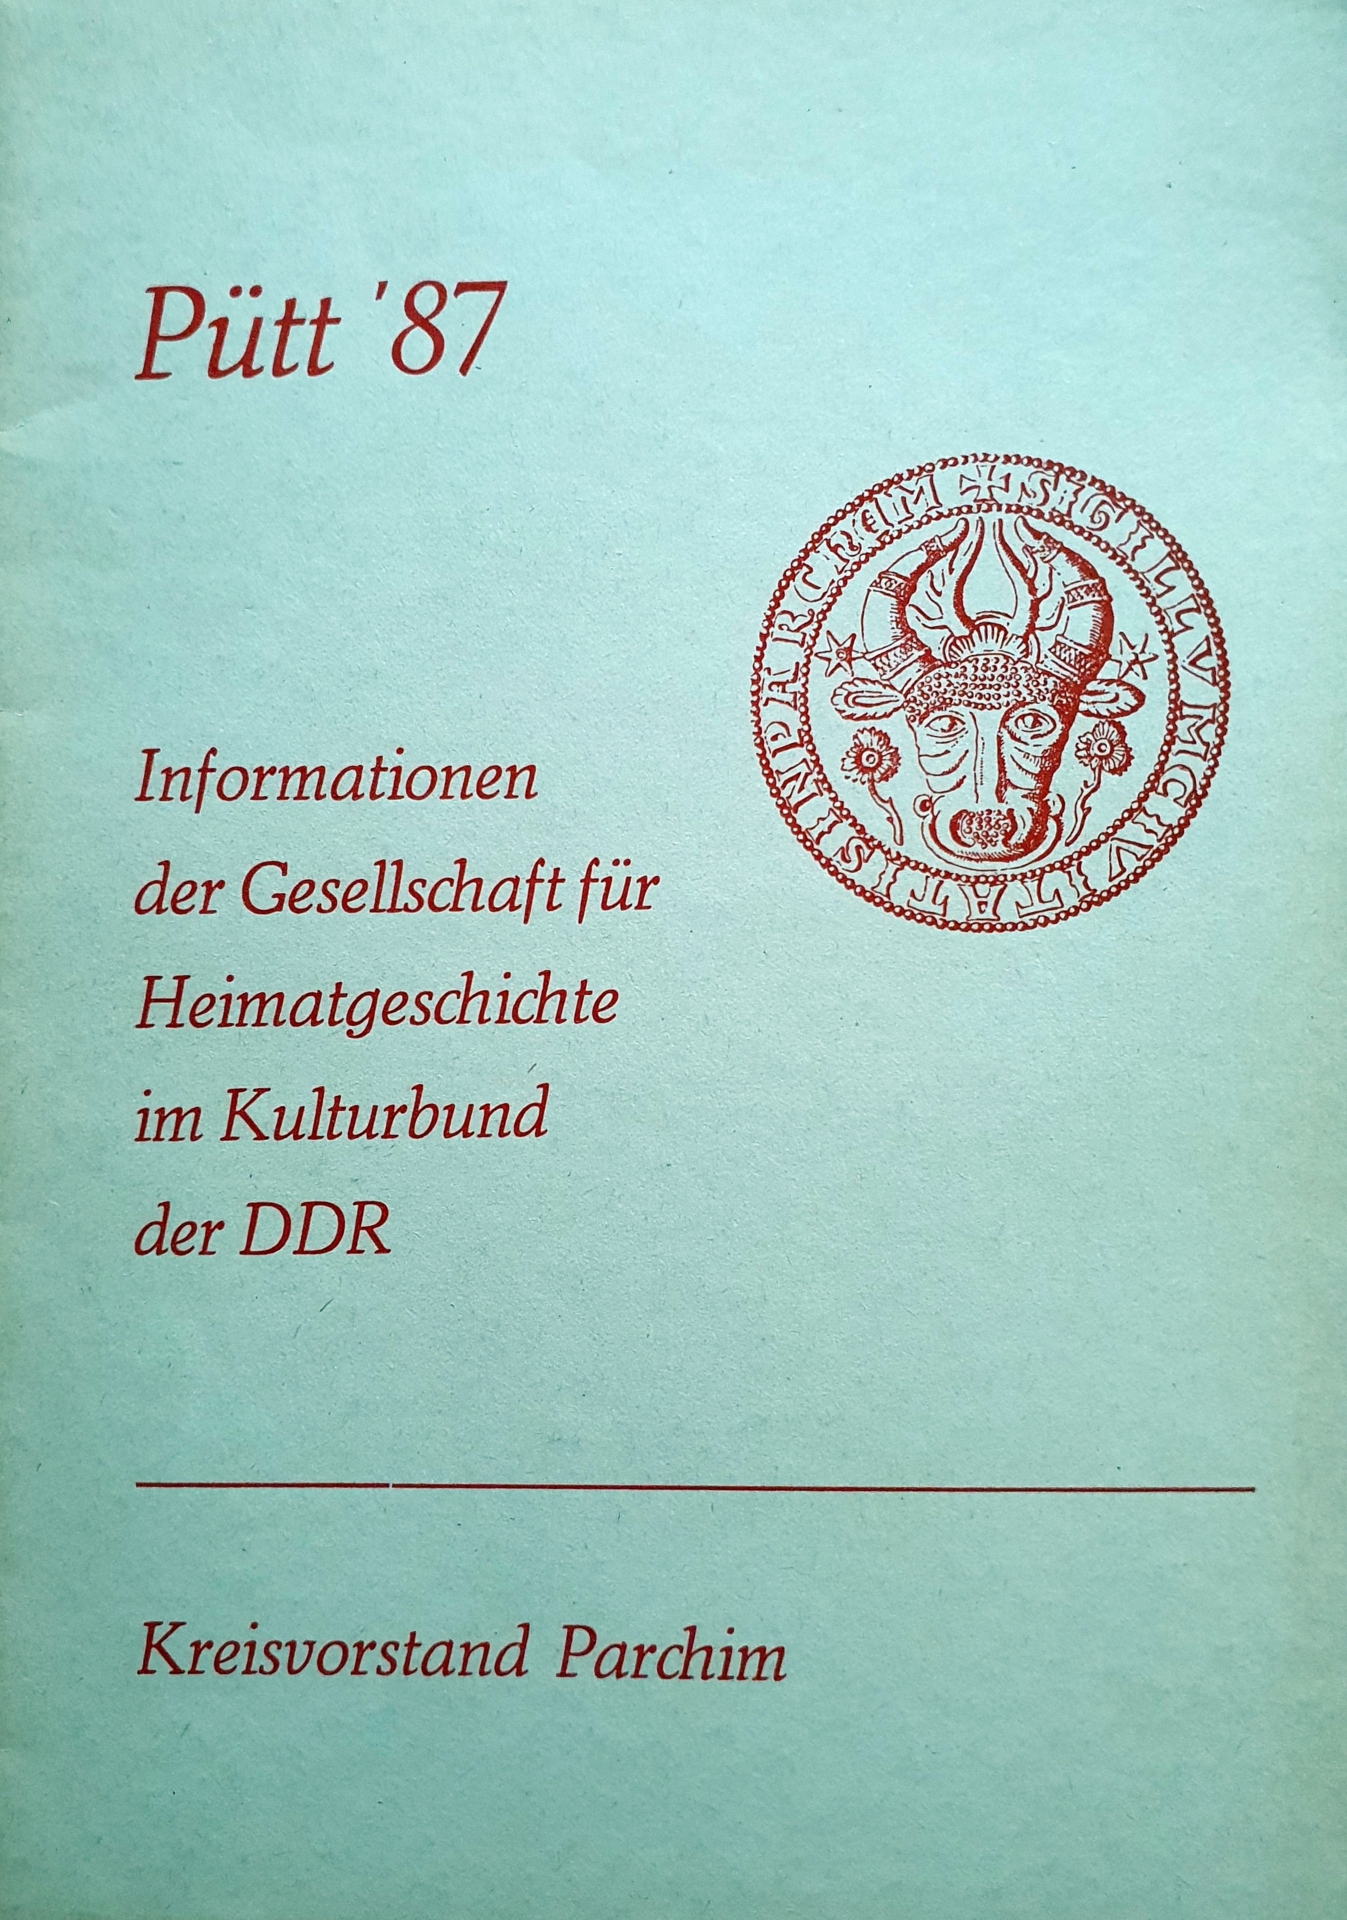 Pütt 1987